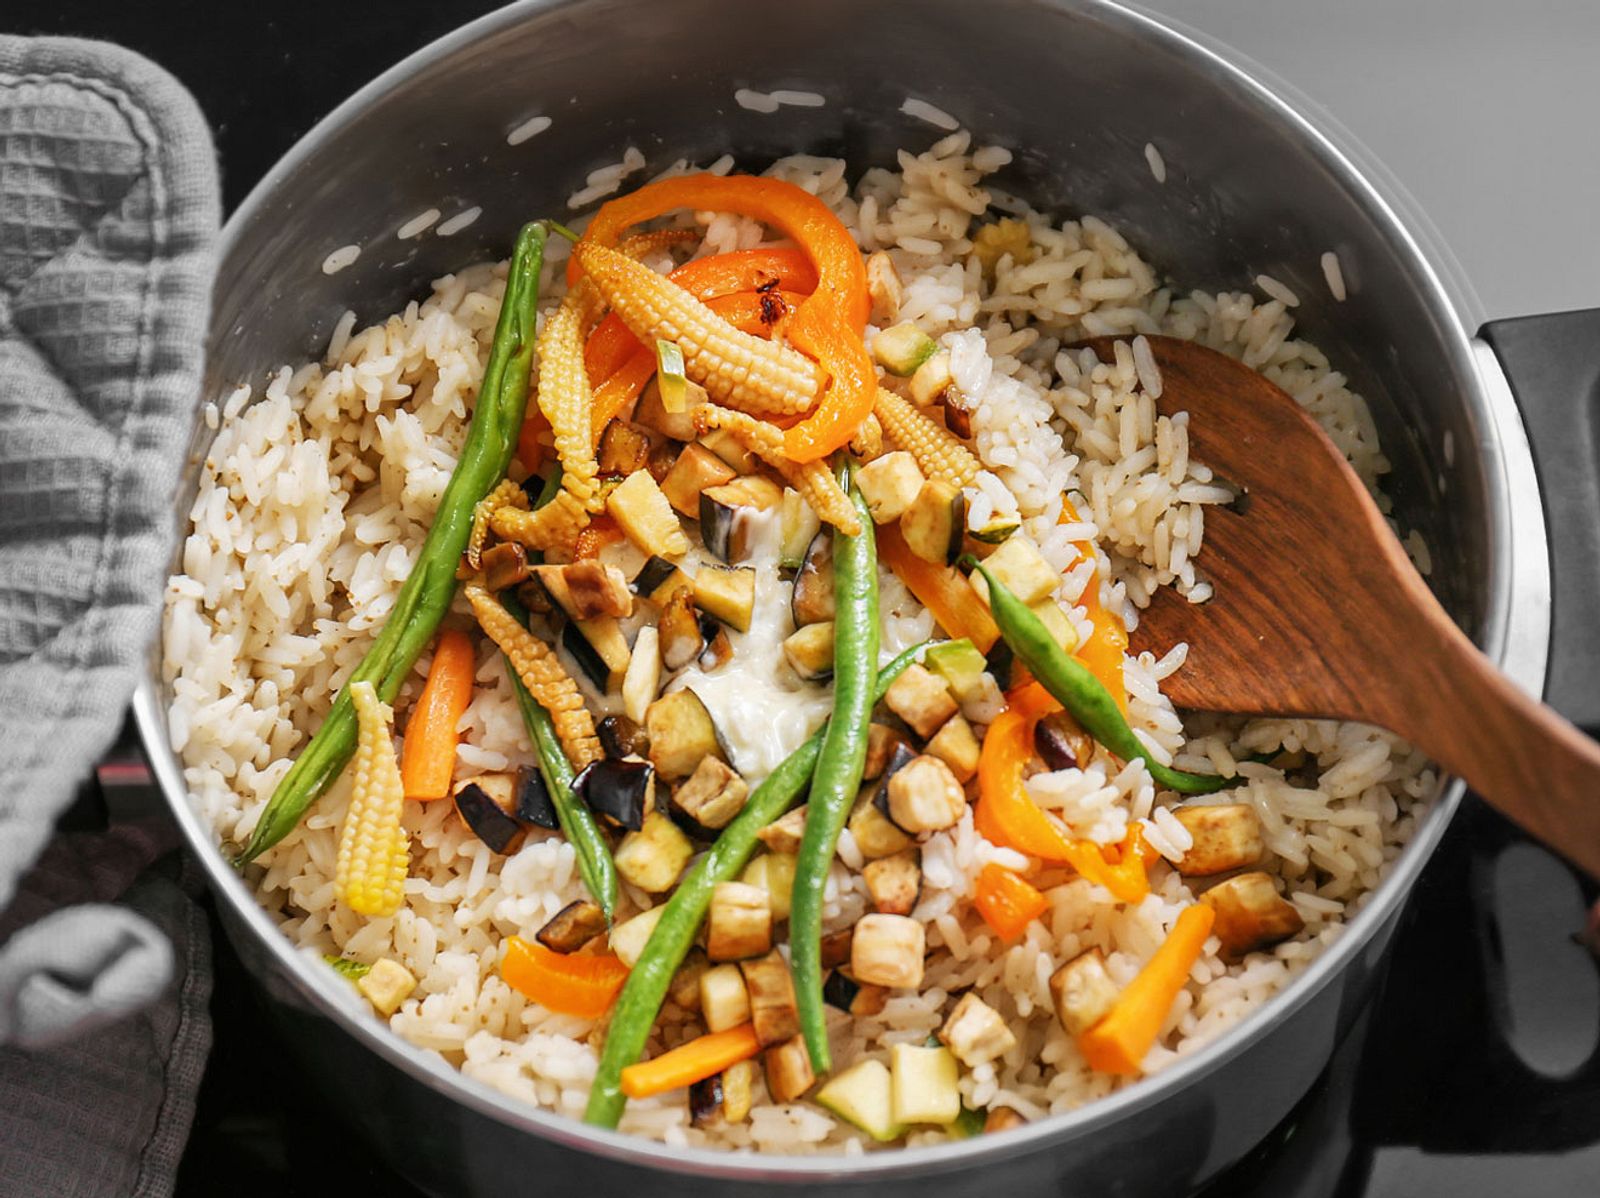 18 Reisgerichte: Einfach, gesund und lecker | Wunderweib